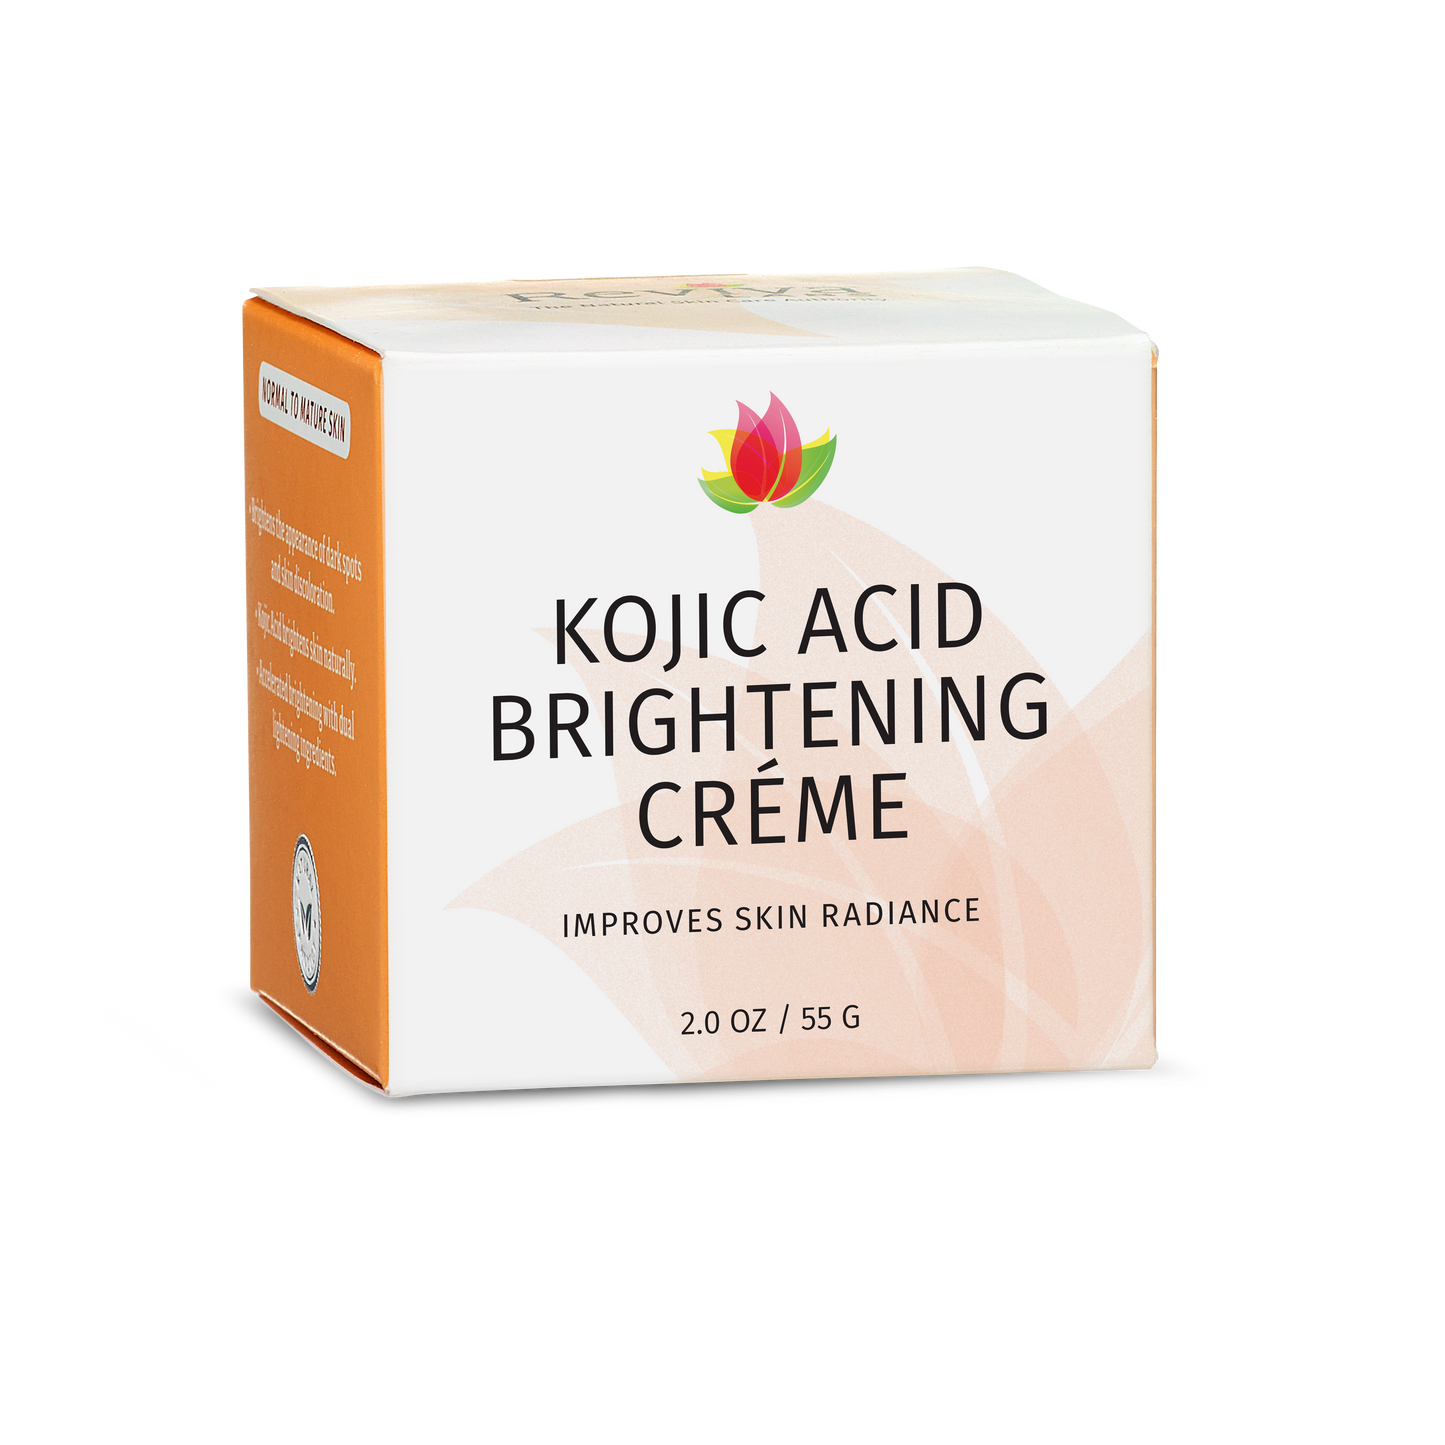 Kojic Acid Brightening Creme